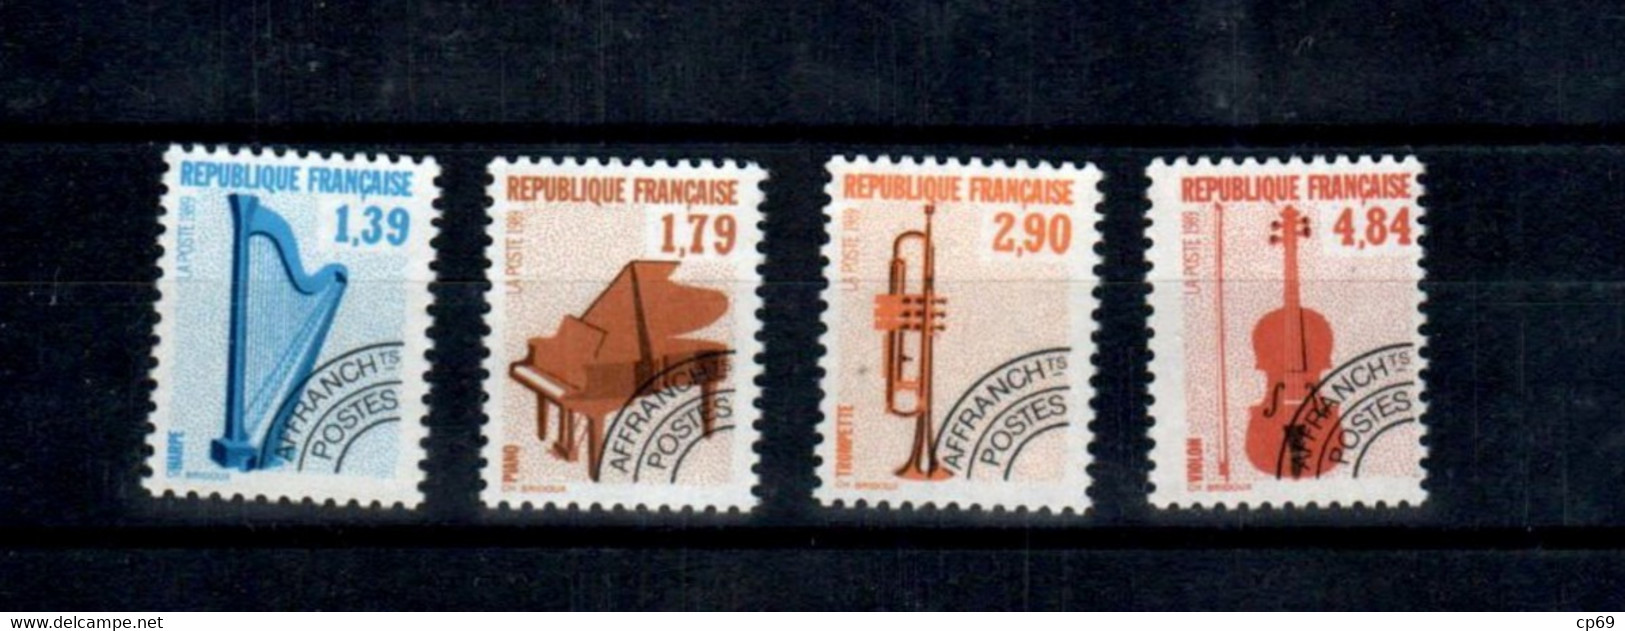 Timbres France 1989 Neuf Préoblitérés Série N°202 à N°205 Instruments De Musique (I) Yvert & Tellier 2012 Côte 7 Euros - 1989-2008